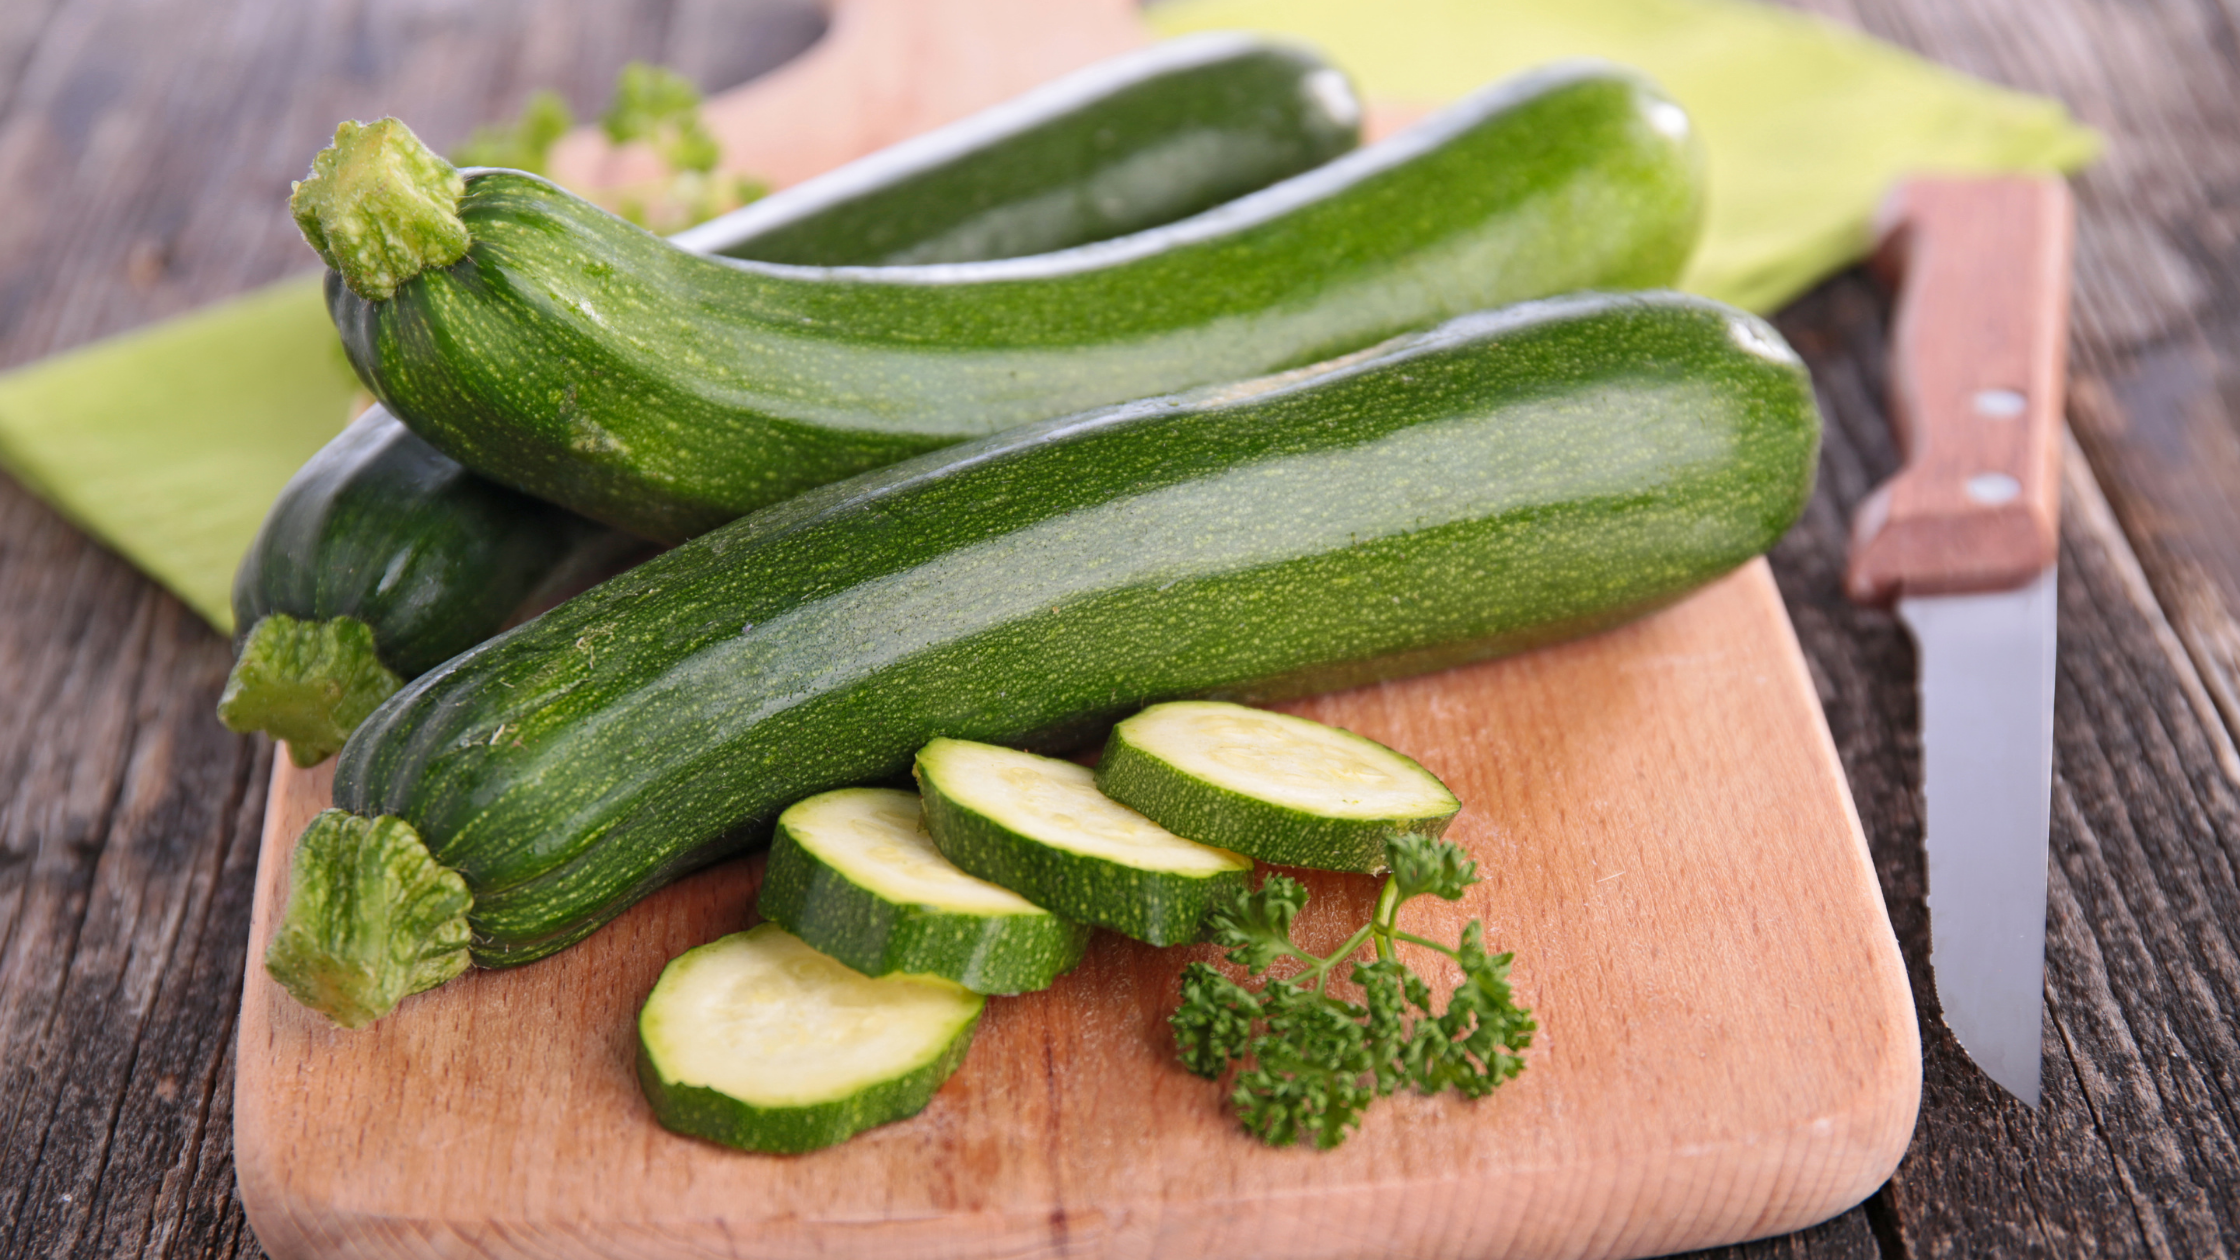 Benefits of zucchini